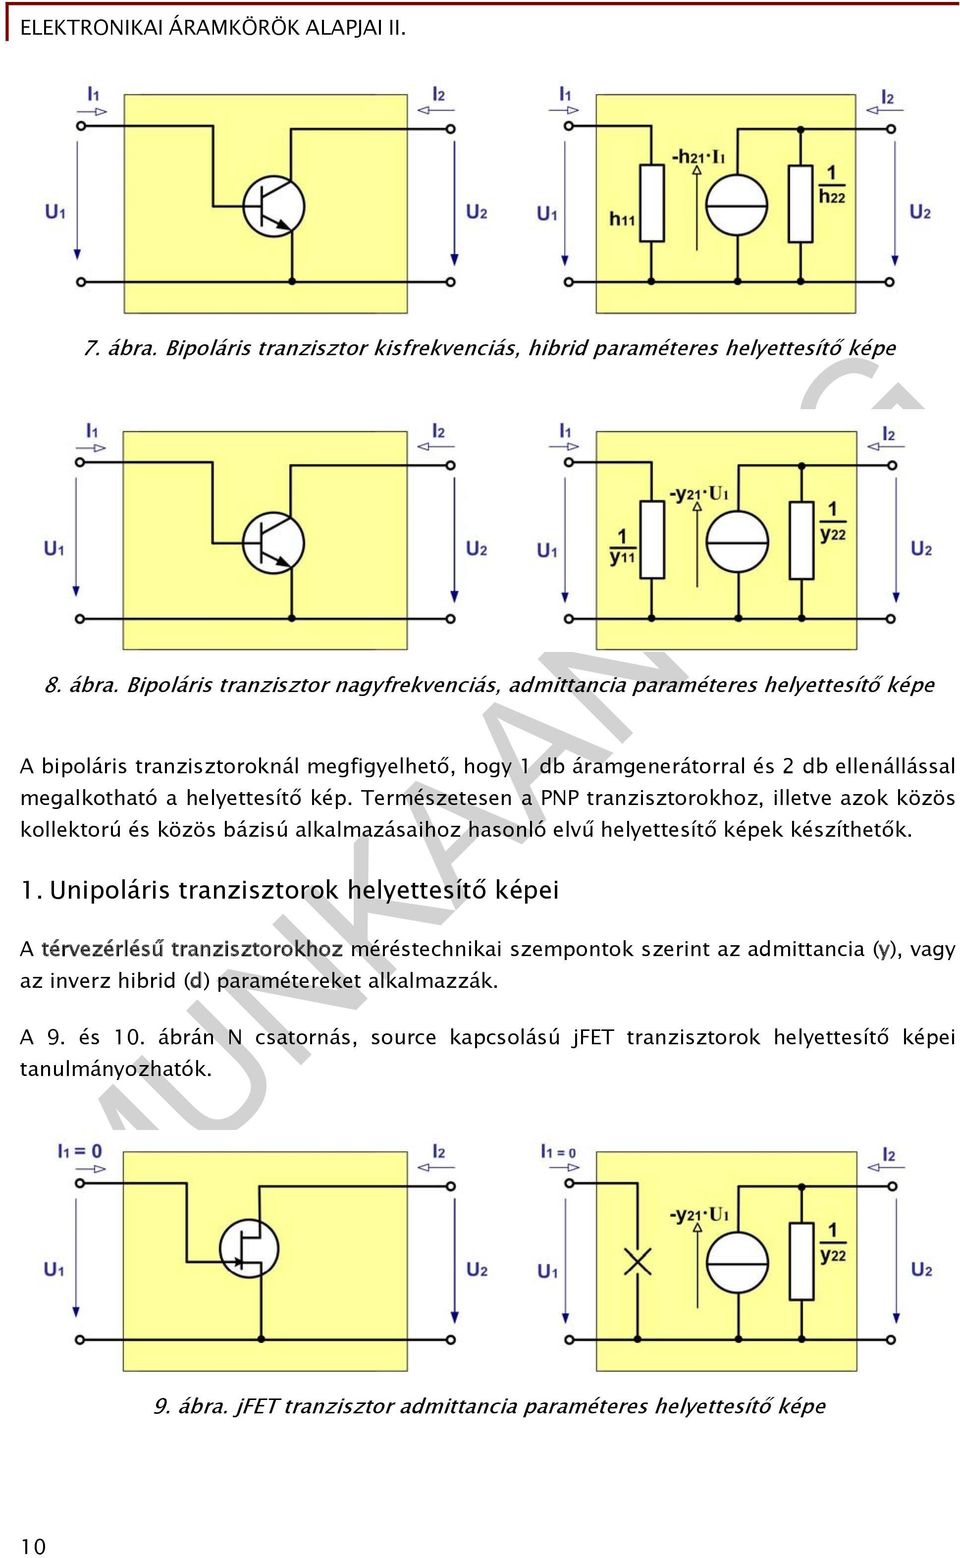 Bipoláris tranzisztor nagyfrekvenciás, admittancia paraméteres helyettesítő képe A bipoláris tranzisztoroknál megfigyelhető, hogy db áramgenerátorral és 2 db ellenállással megalkotható a helyettesítő